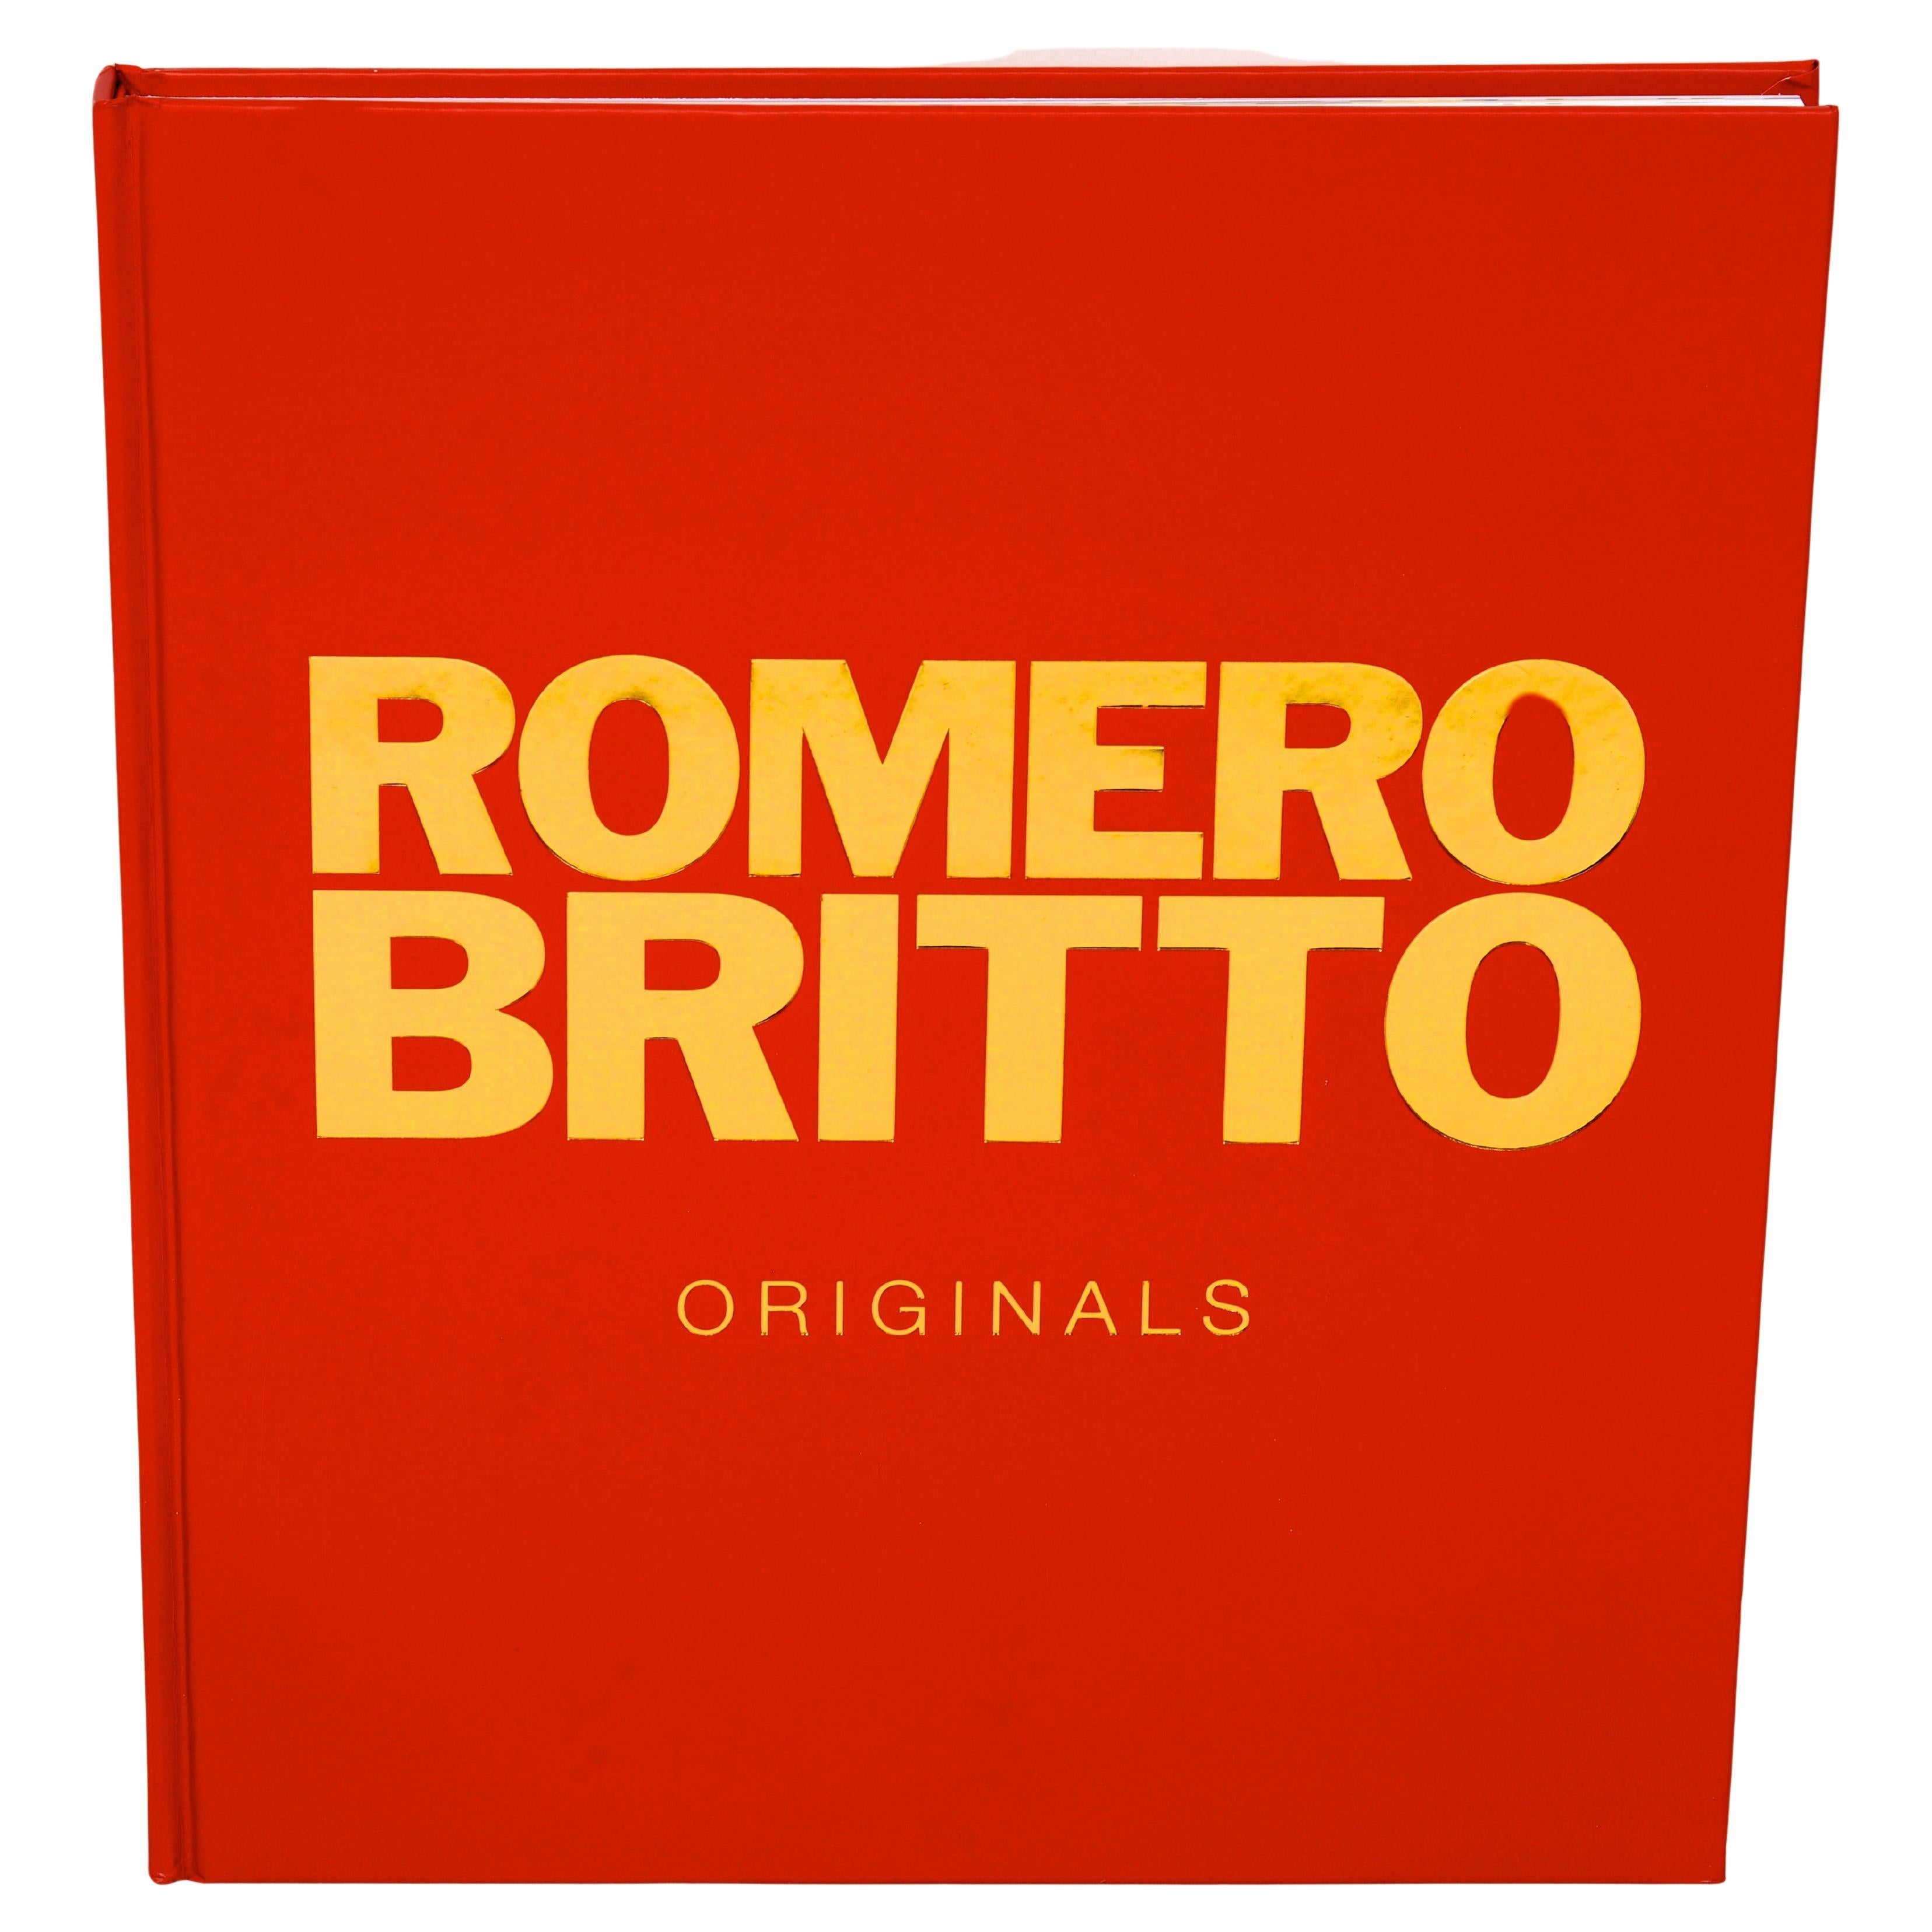 Romero Britto Originals, by Romero Britto